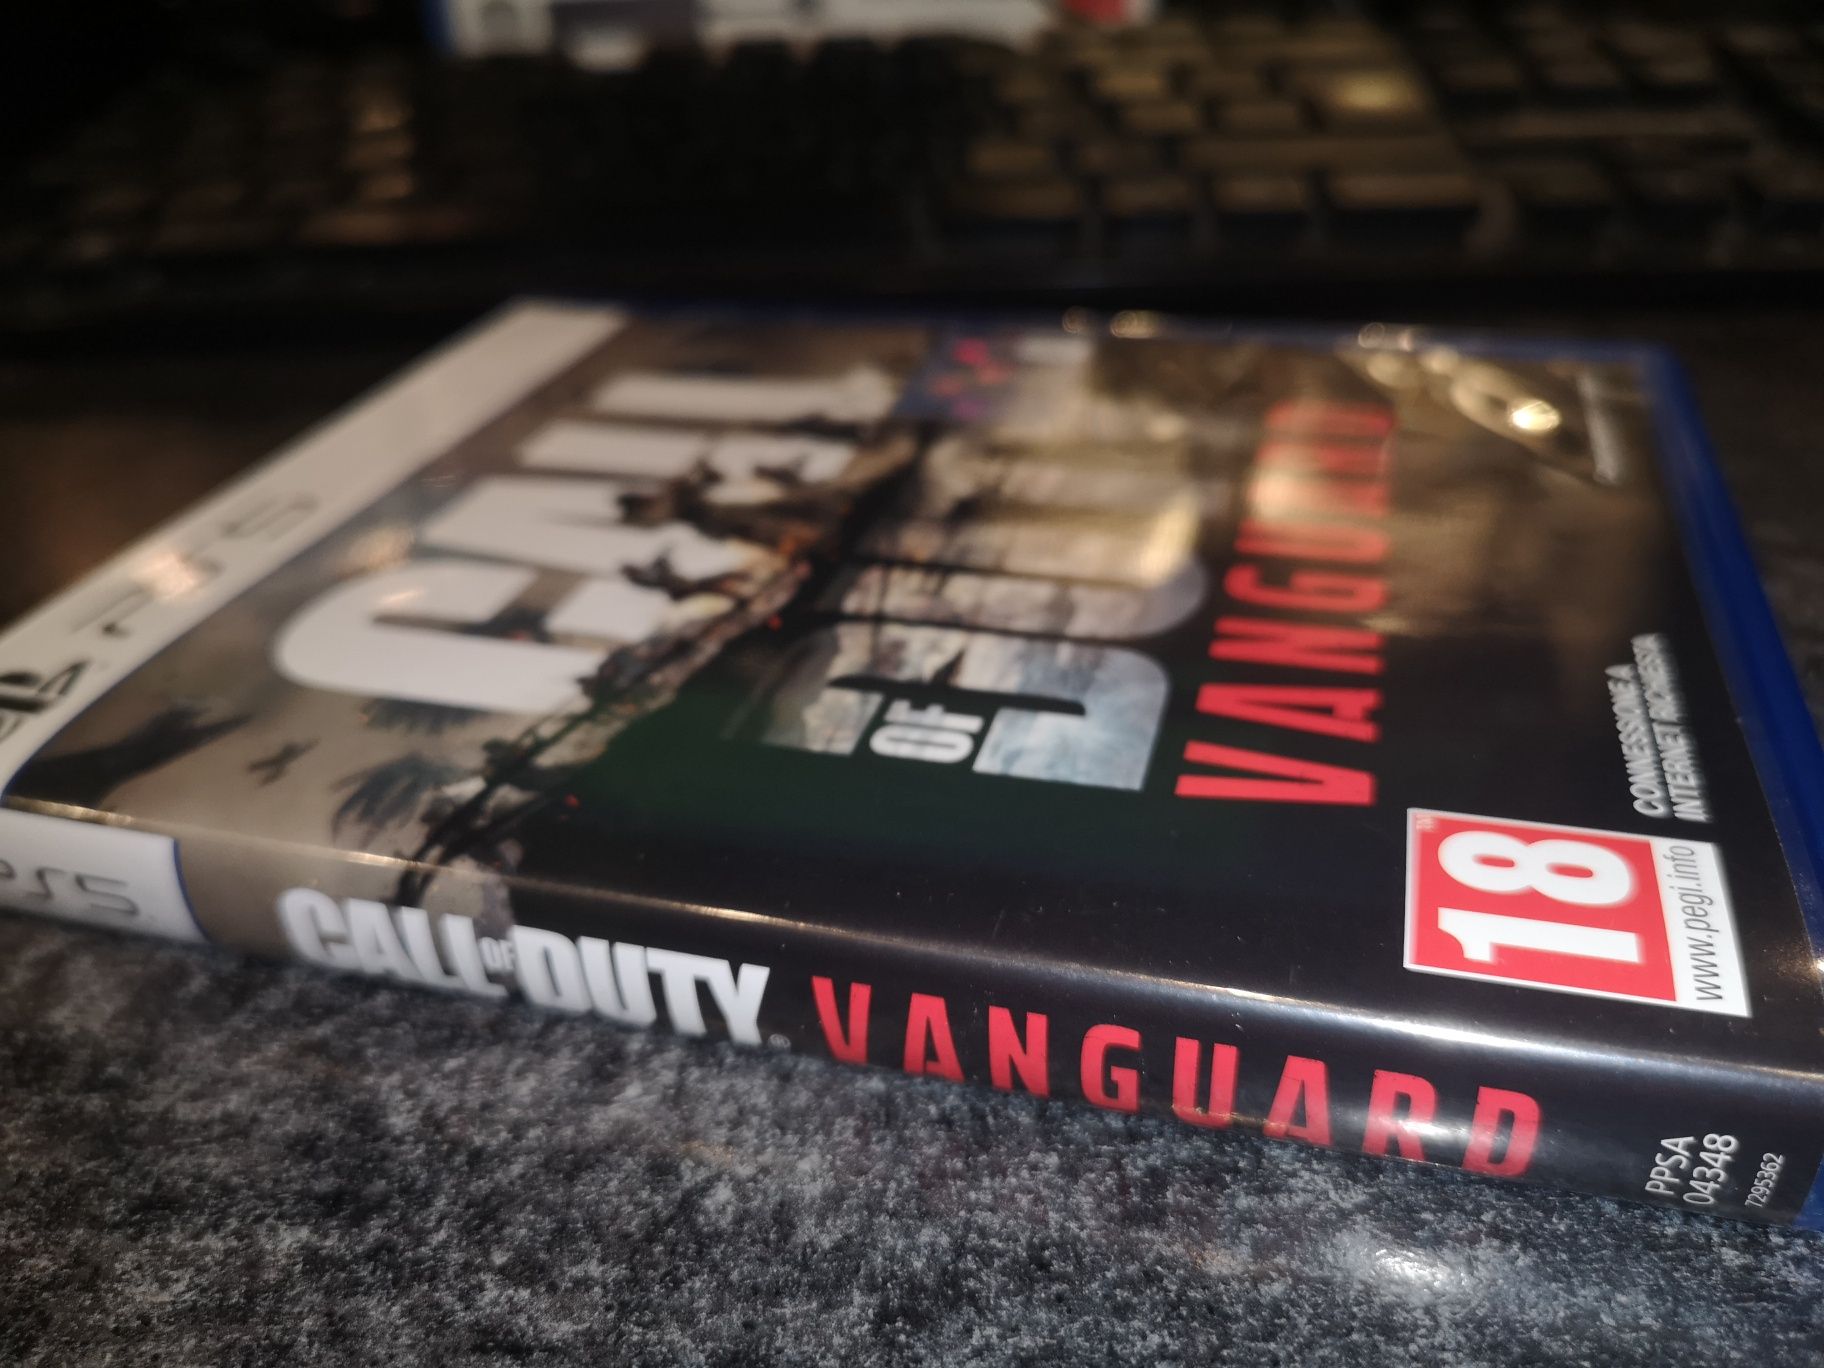 Call of Duty Vanguard PS5 gra PL (możliwość wymiany) sklep Ursus